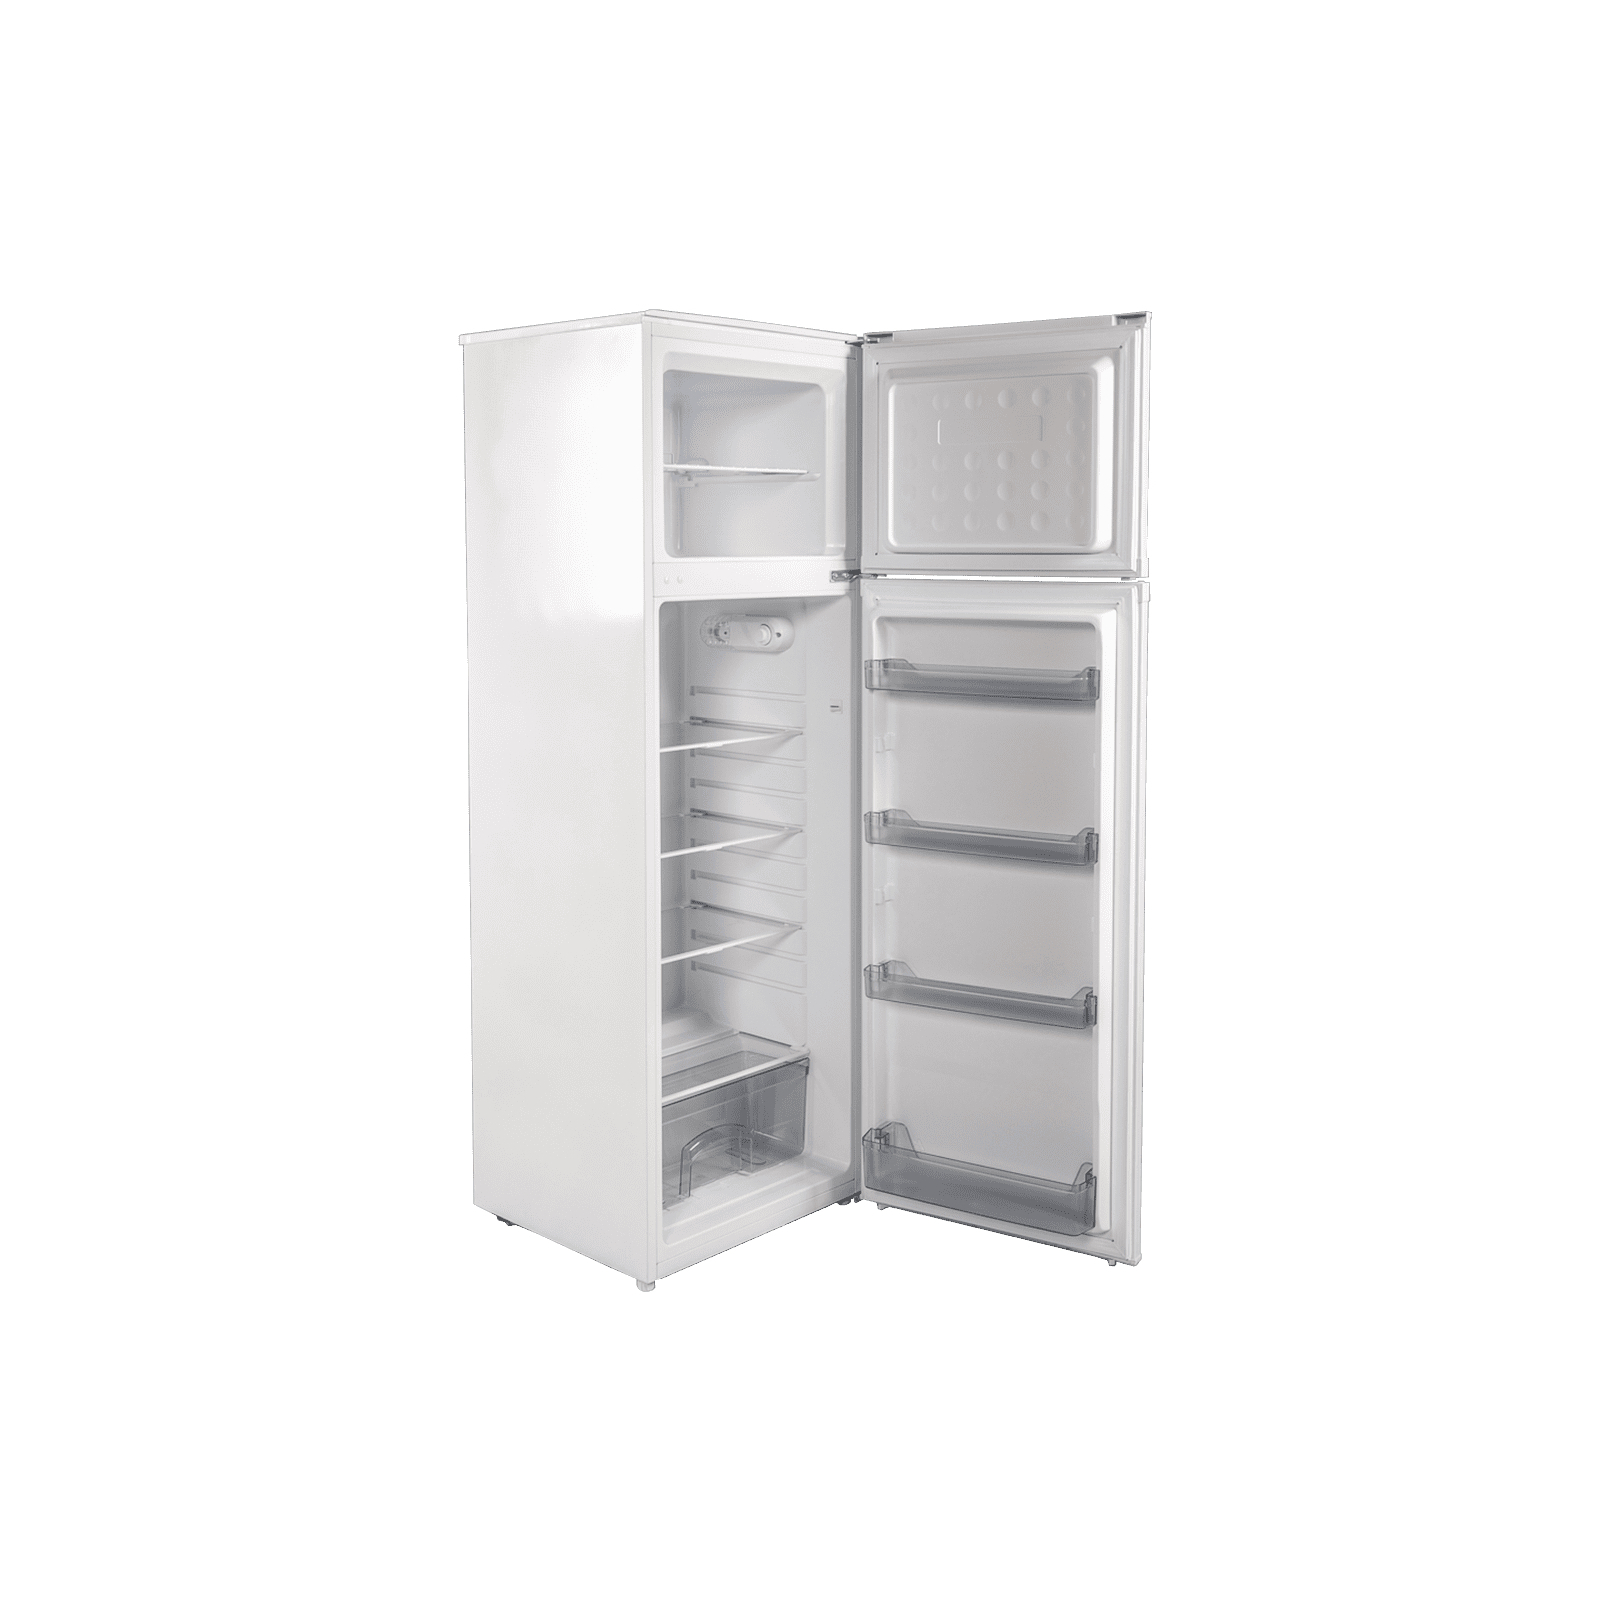 Холодильник Grunhelm TRH-S166M55-W зображення 5